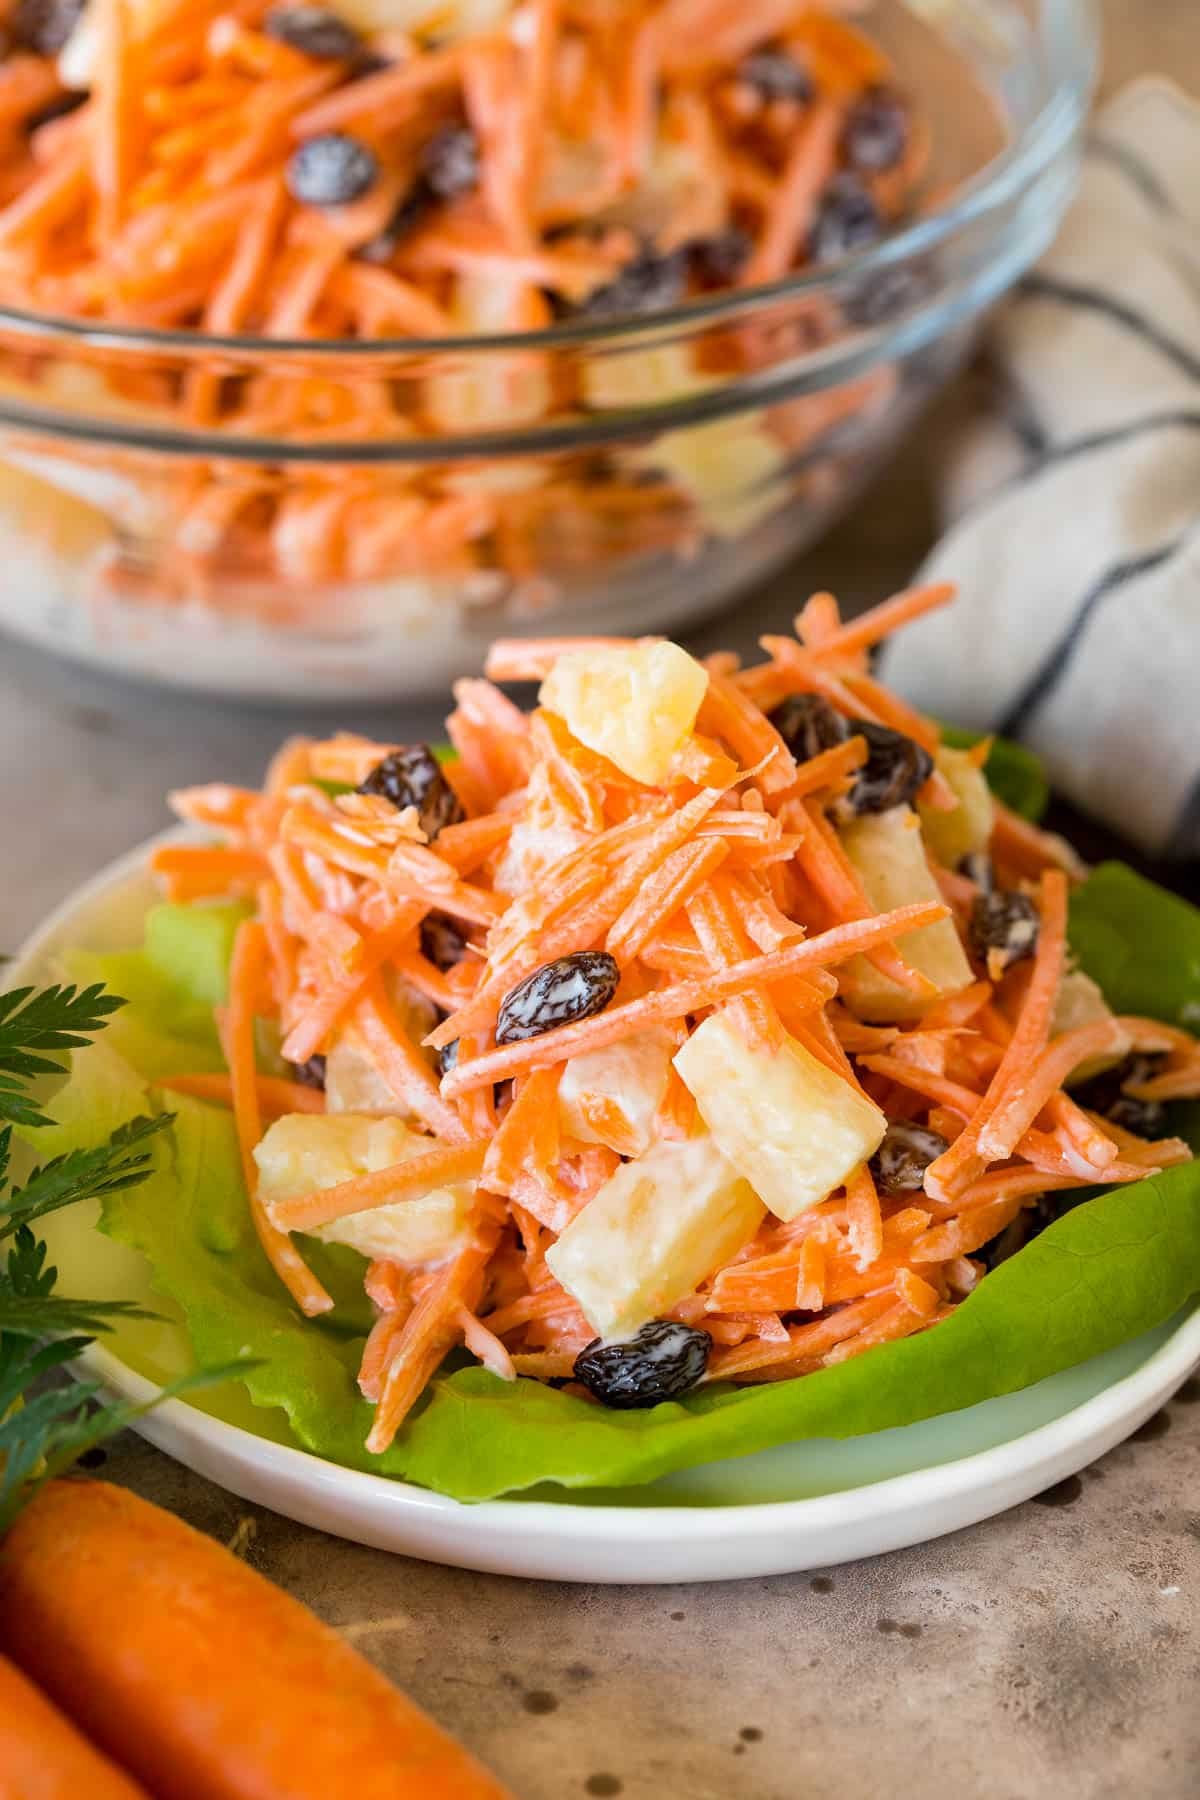 A serving of carrot salad on a lettuce leaf.